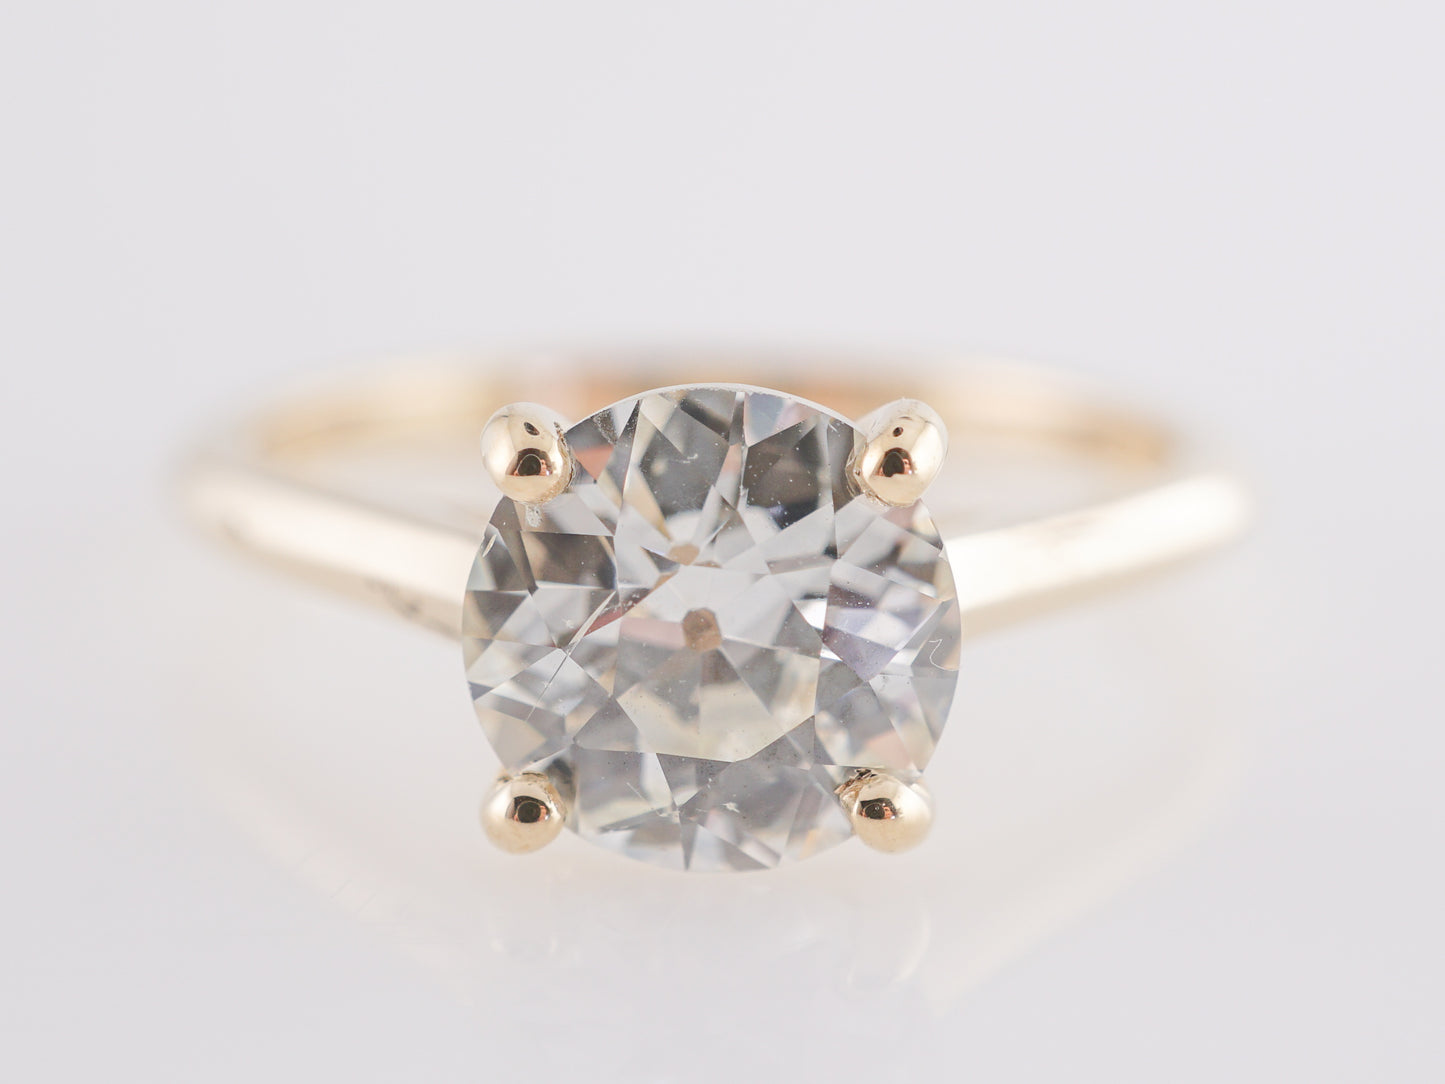 1.55 Carat European Cut Diamond Engagement Ring 14k Gold